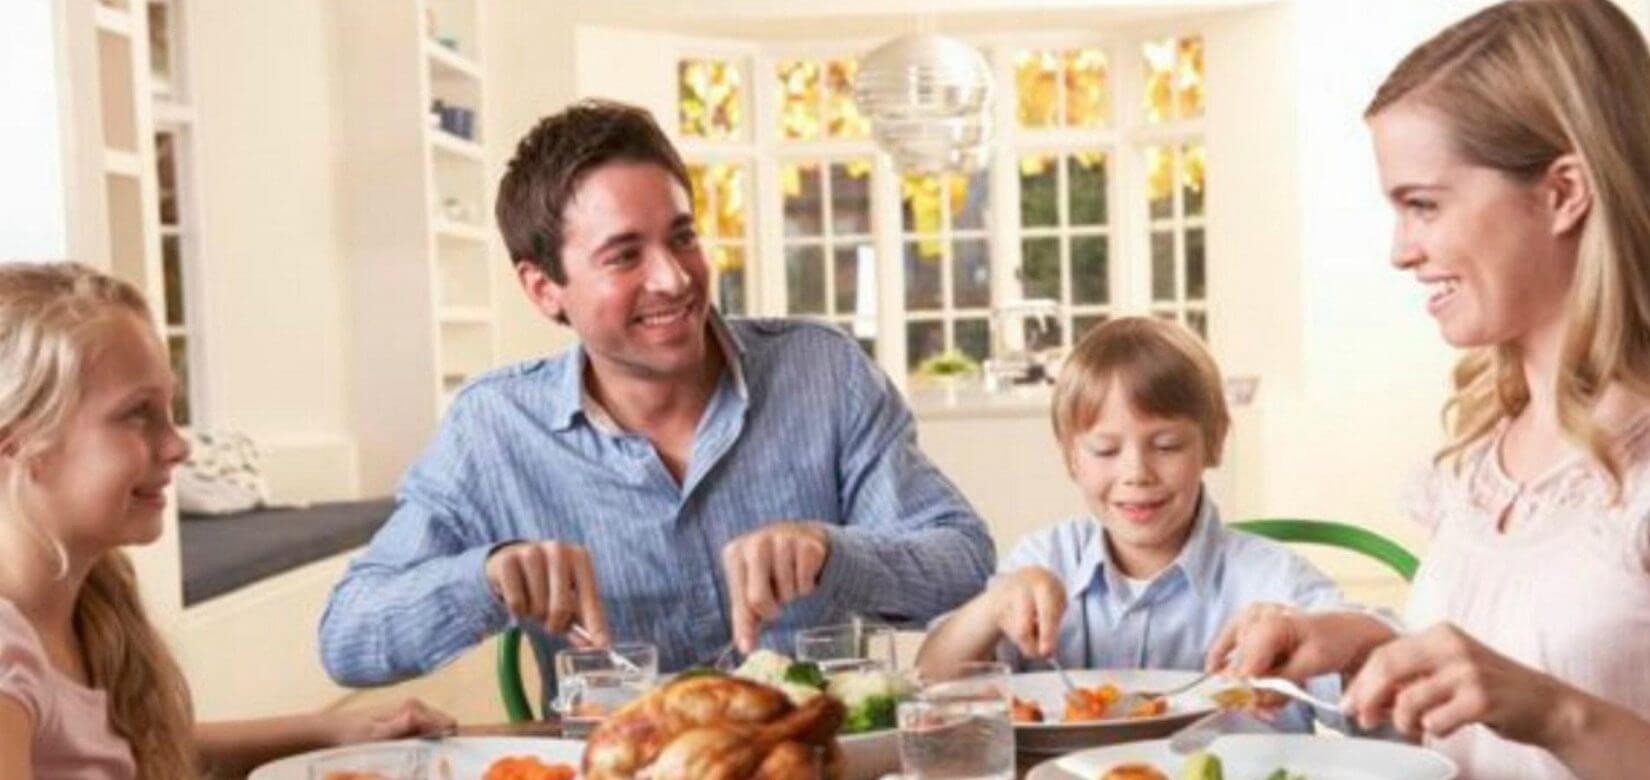 4 επιστημονικά αποδεδειγμένα οφέλη για τα παιδιά, όταν τρώτε σαν οικογένεια!